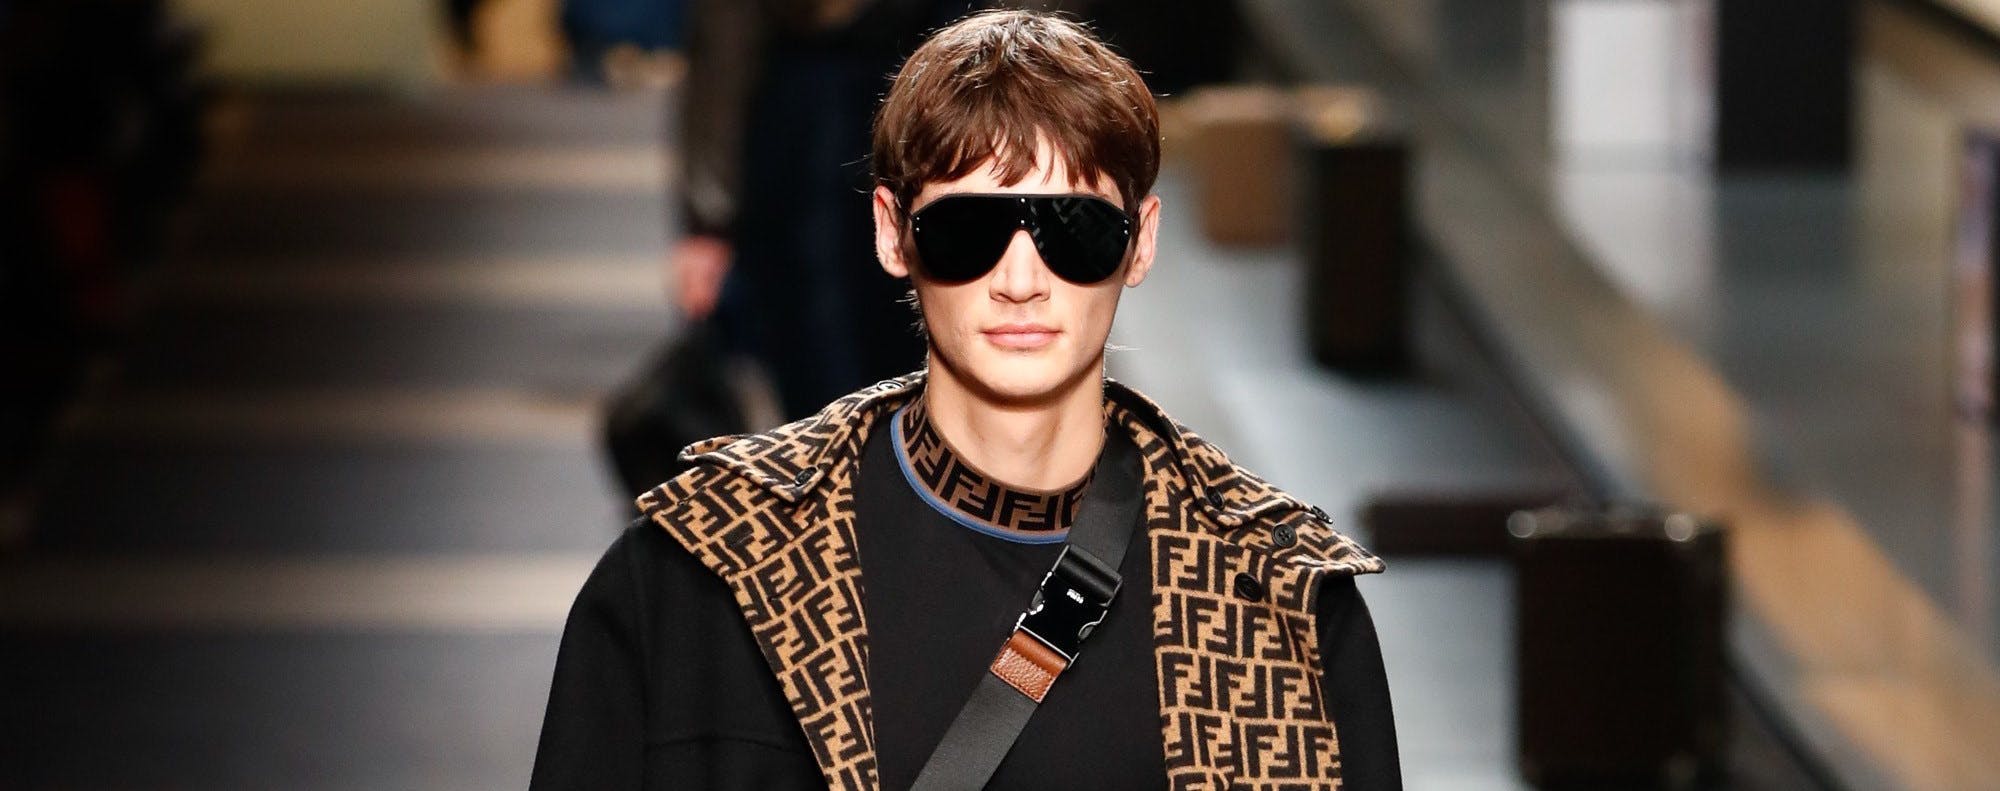 sunglasses accessories accessory person human